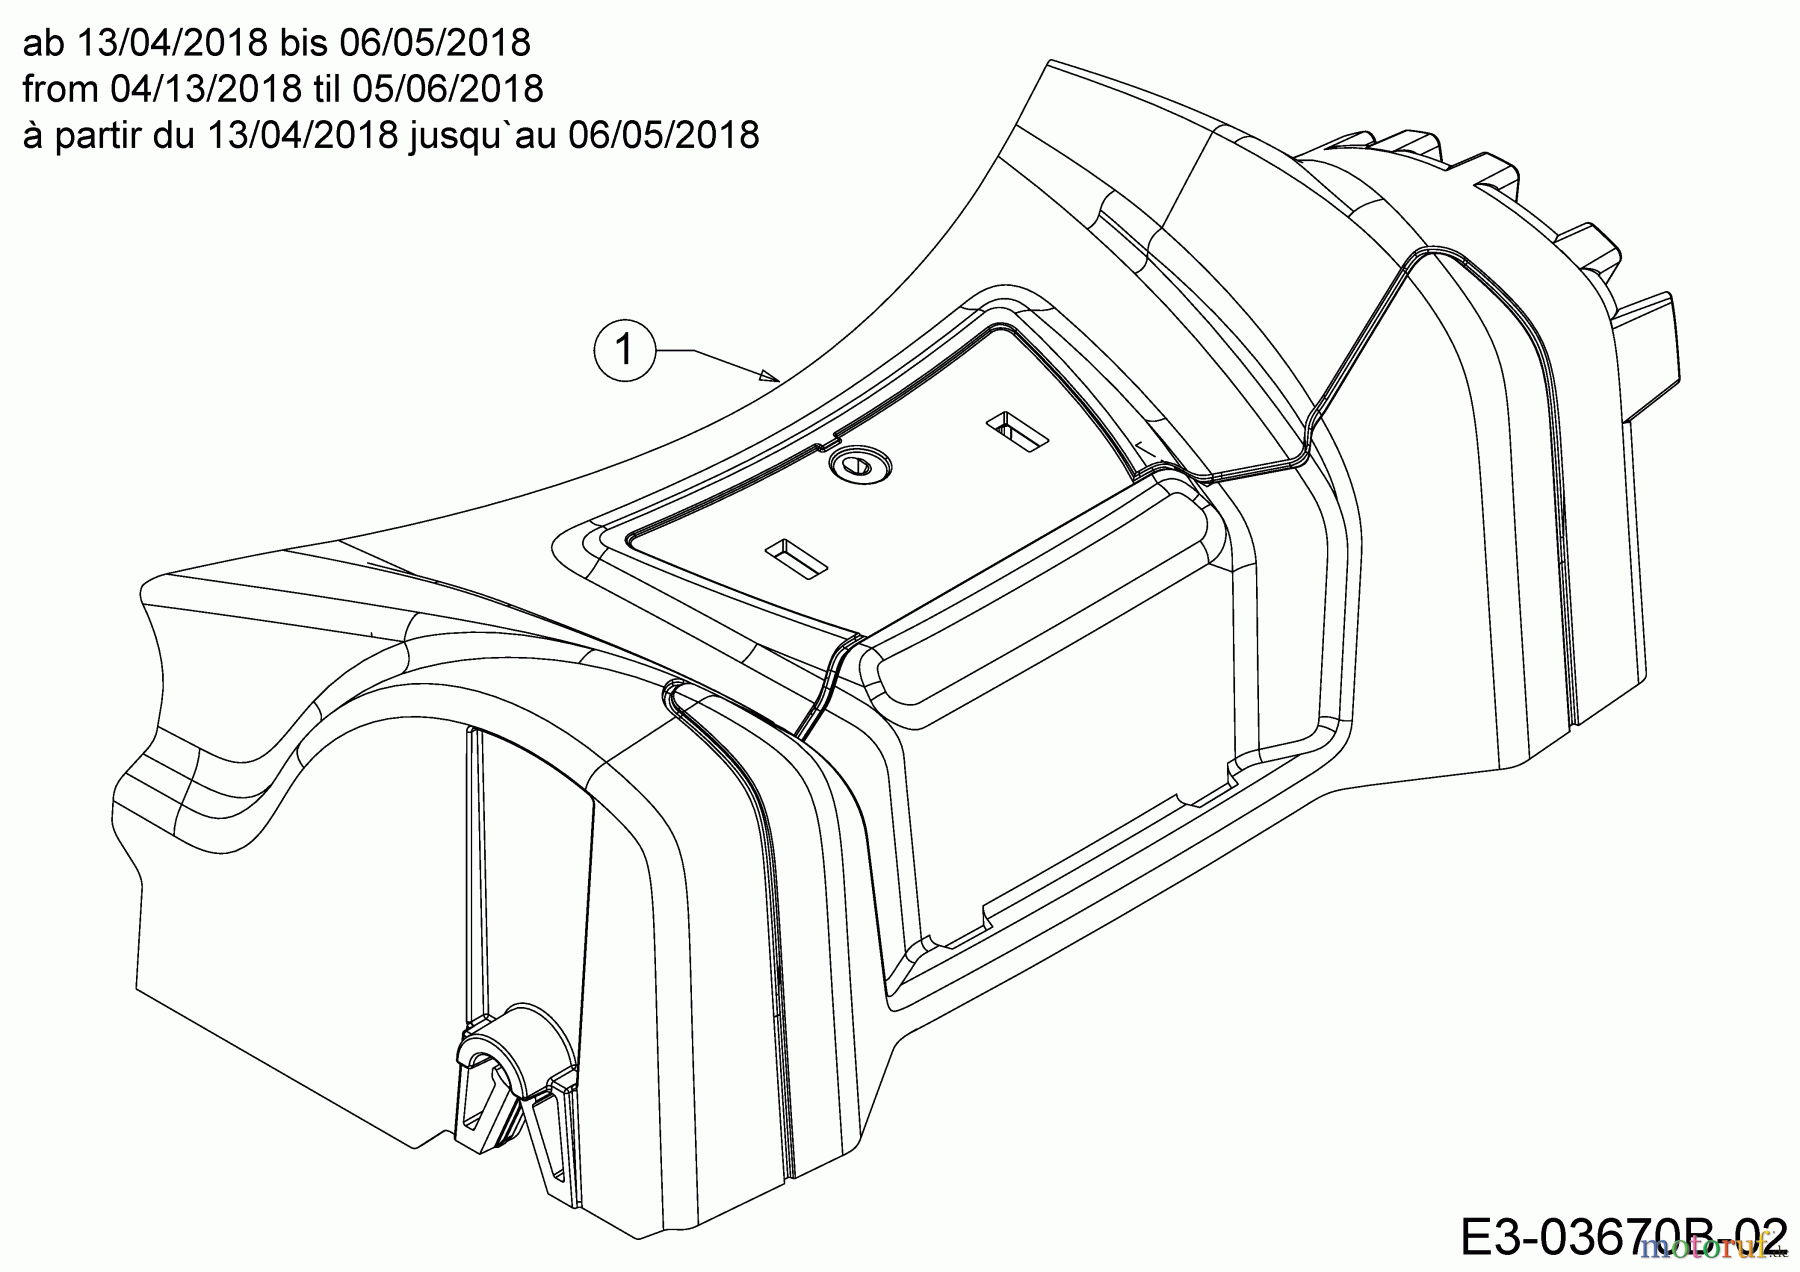  MTD Motormäher mit Antrieb SP 46 T 12E-TASJ600  (2018) Abdeckung Vorderachse ab 13/04/2018 bis 06/05/2018